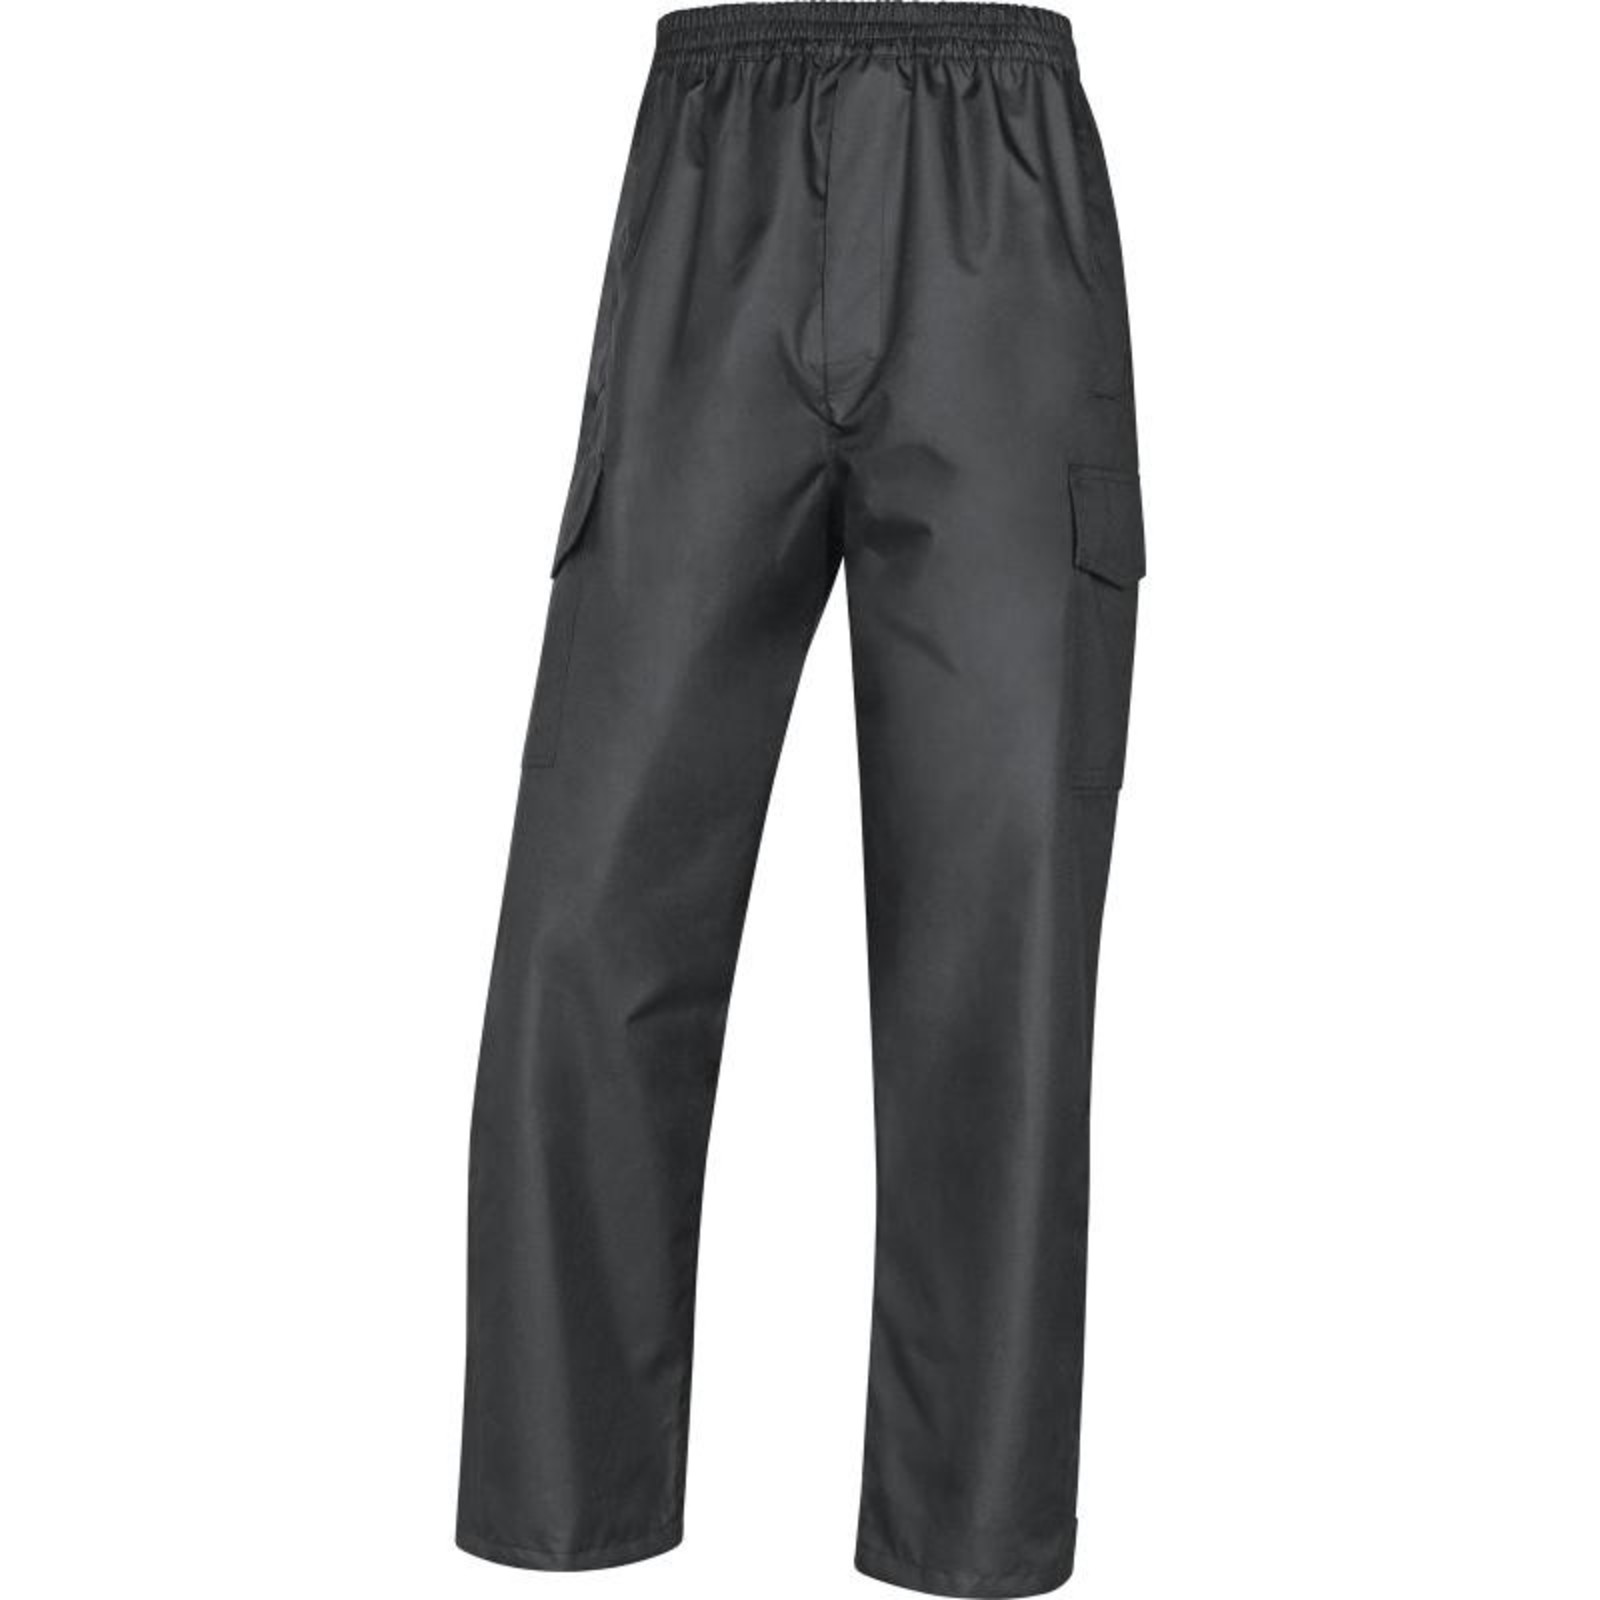 Nohavice do dažďa Galway - veľkosť: M, farba: čierna